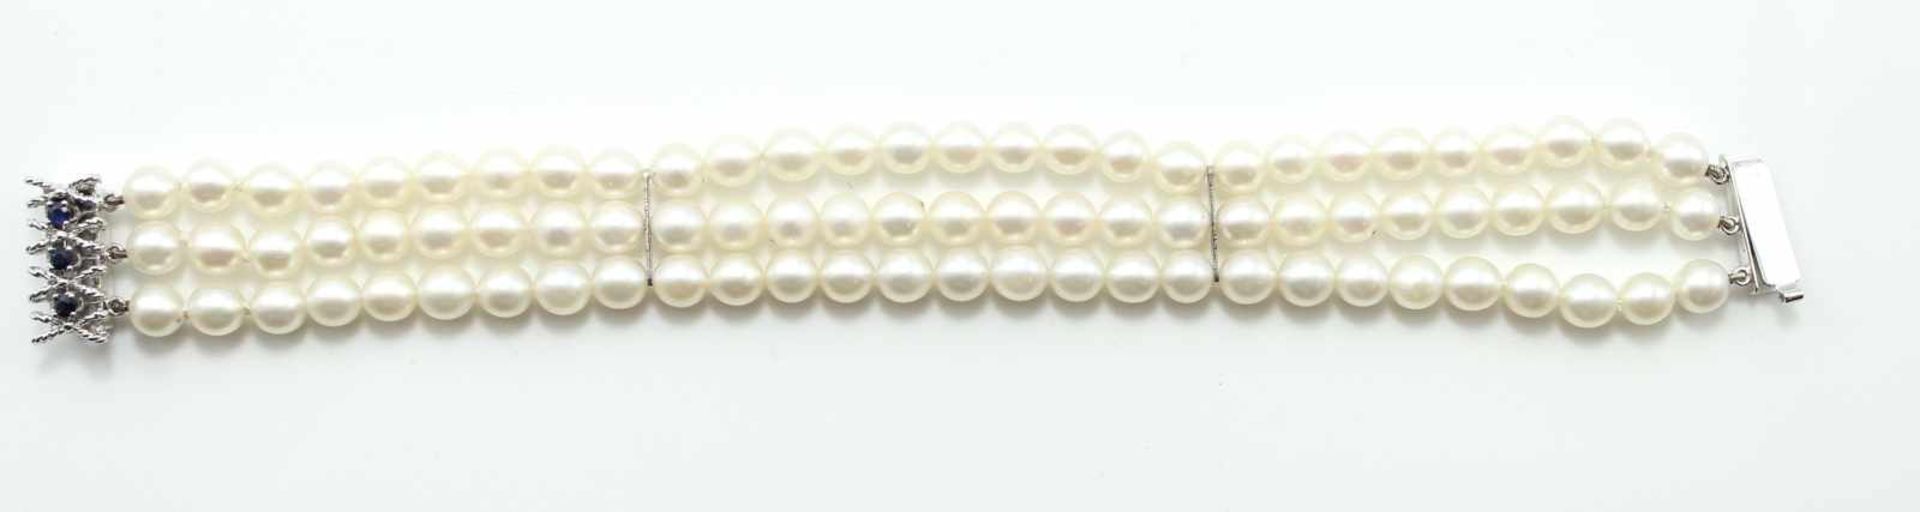 Perlarmband mit 84 Perlen (d.= 5,5 mm) 3-reihig, Schiebeveschluß und Zwischenstege WG gest. 585,